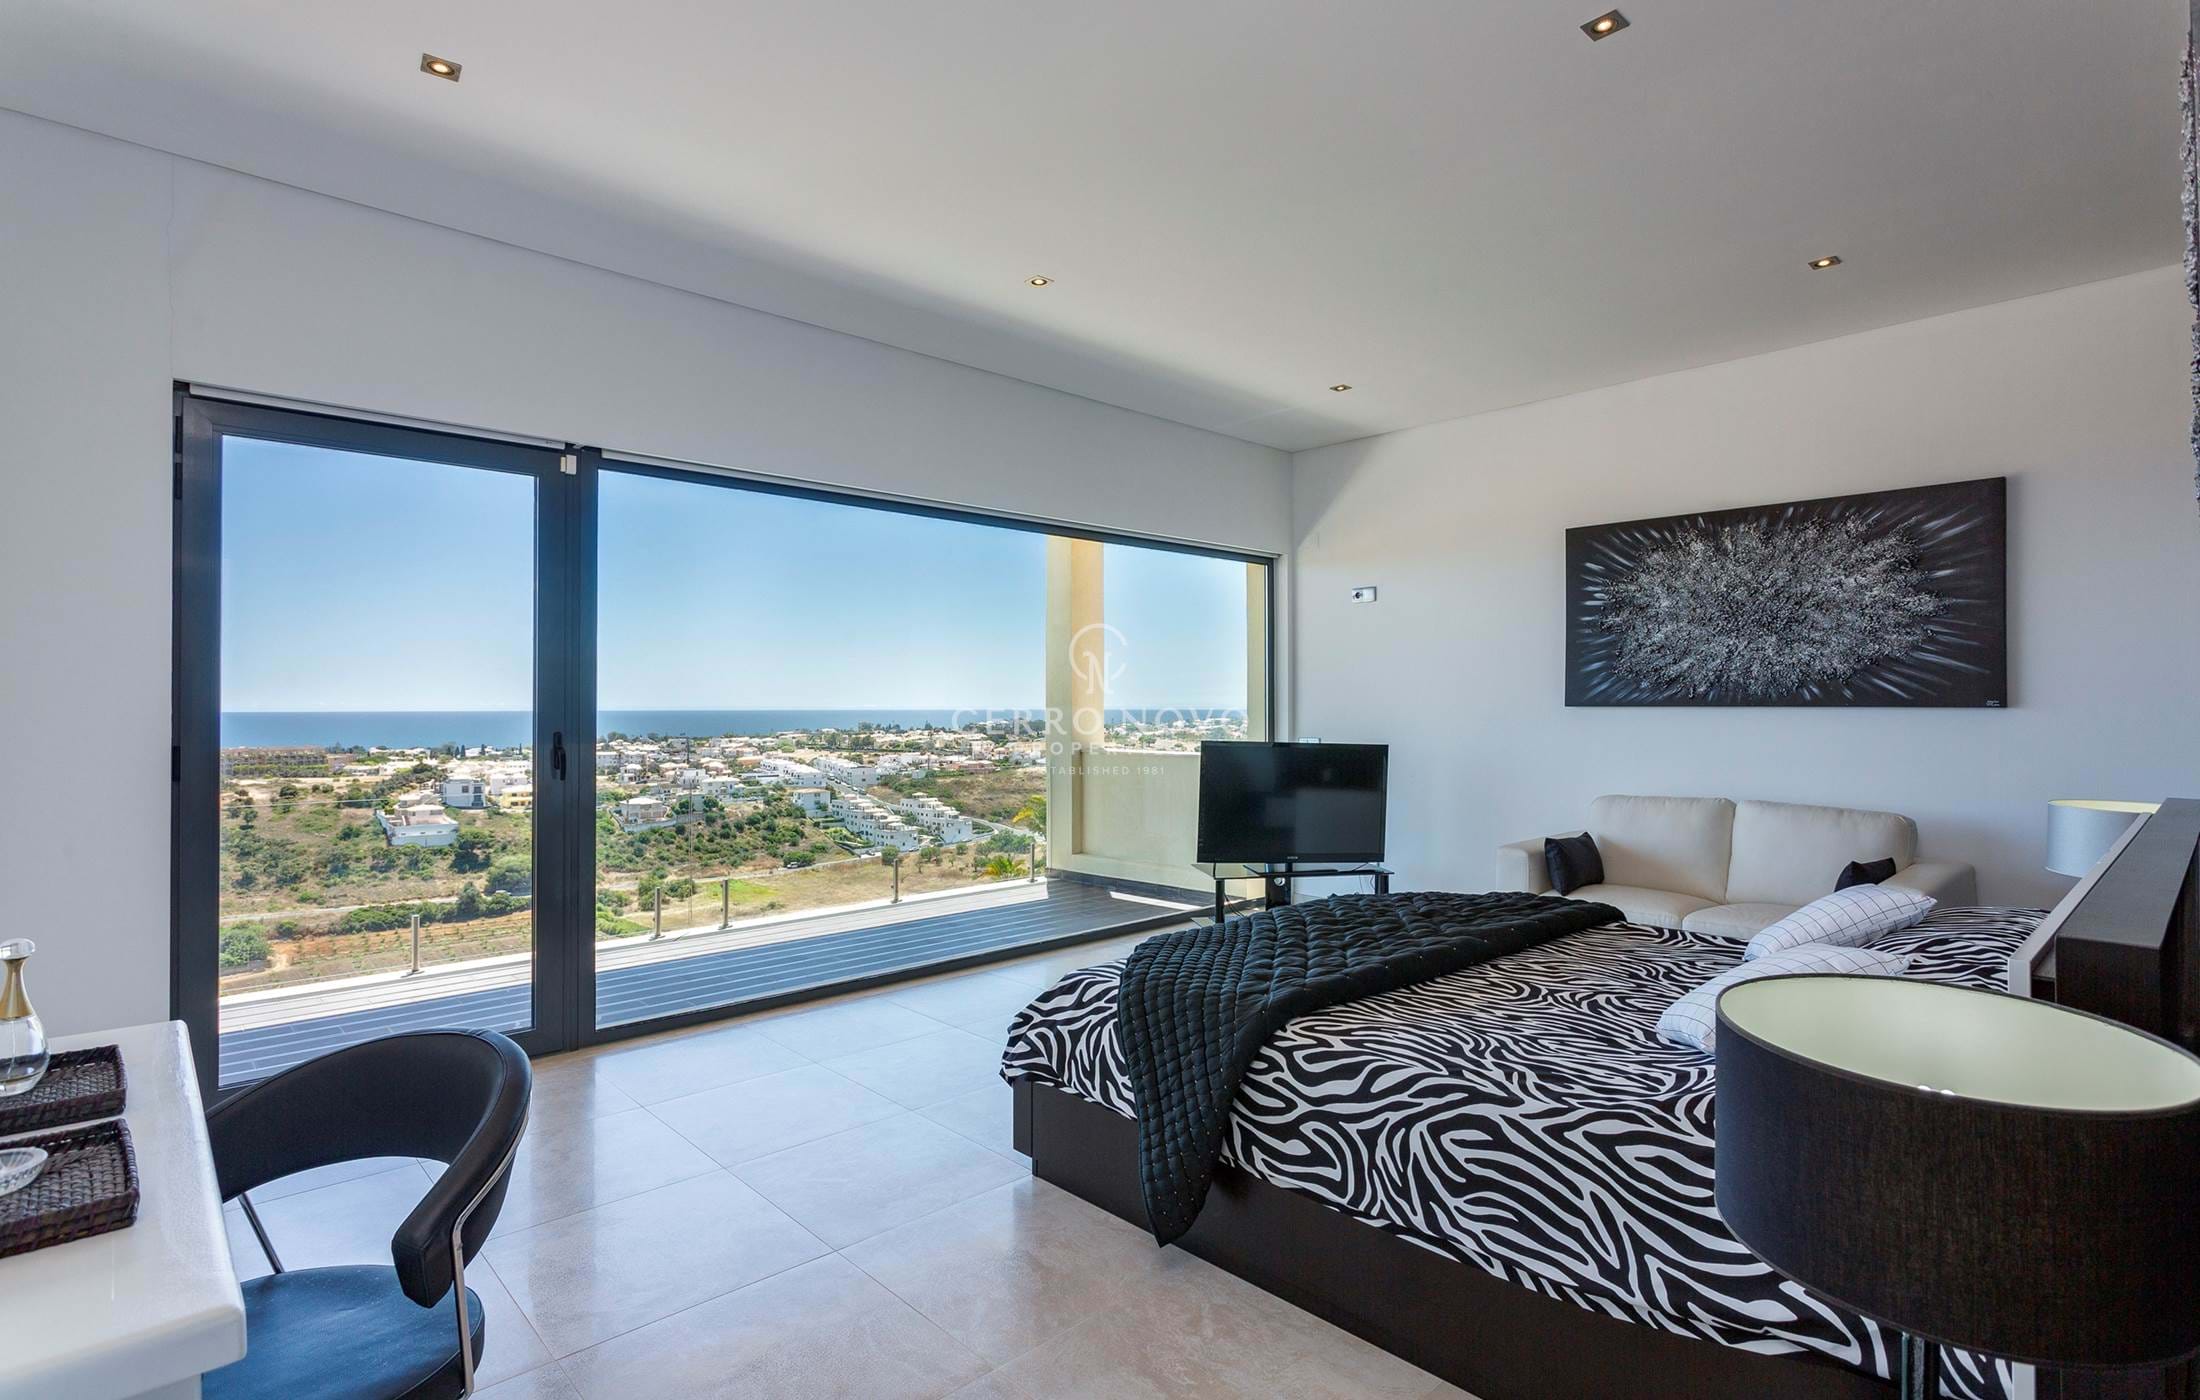 Moradia moderna de 4 quartos com vistas espectaculares de mar